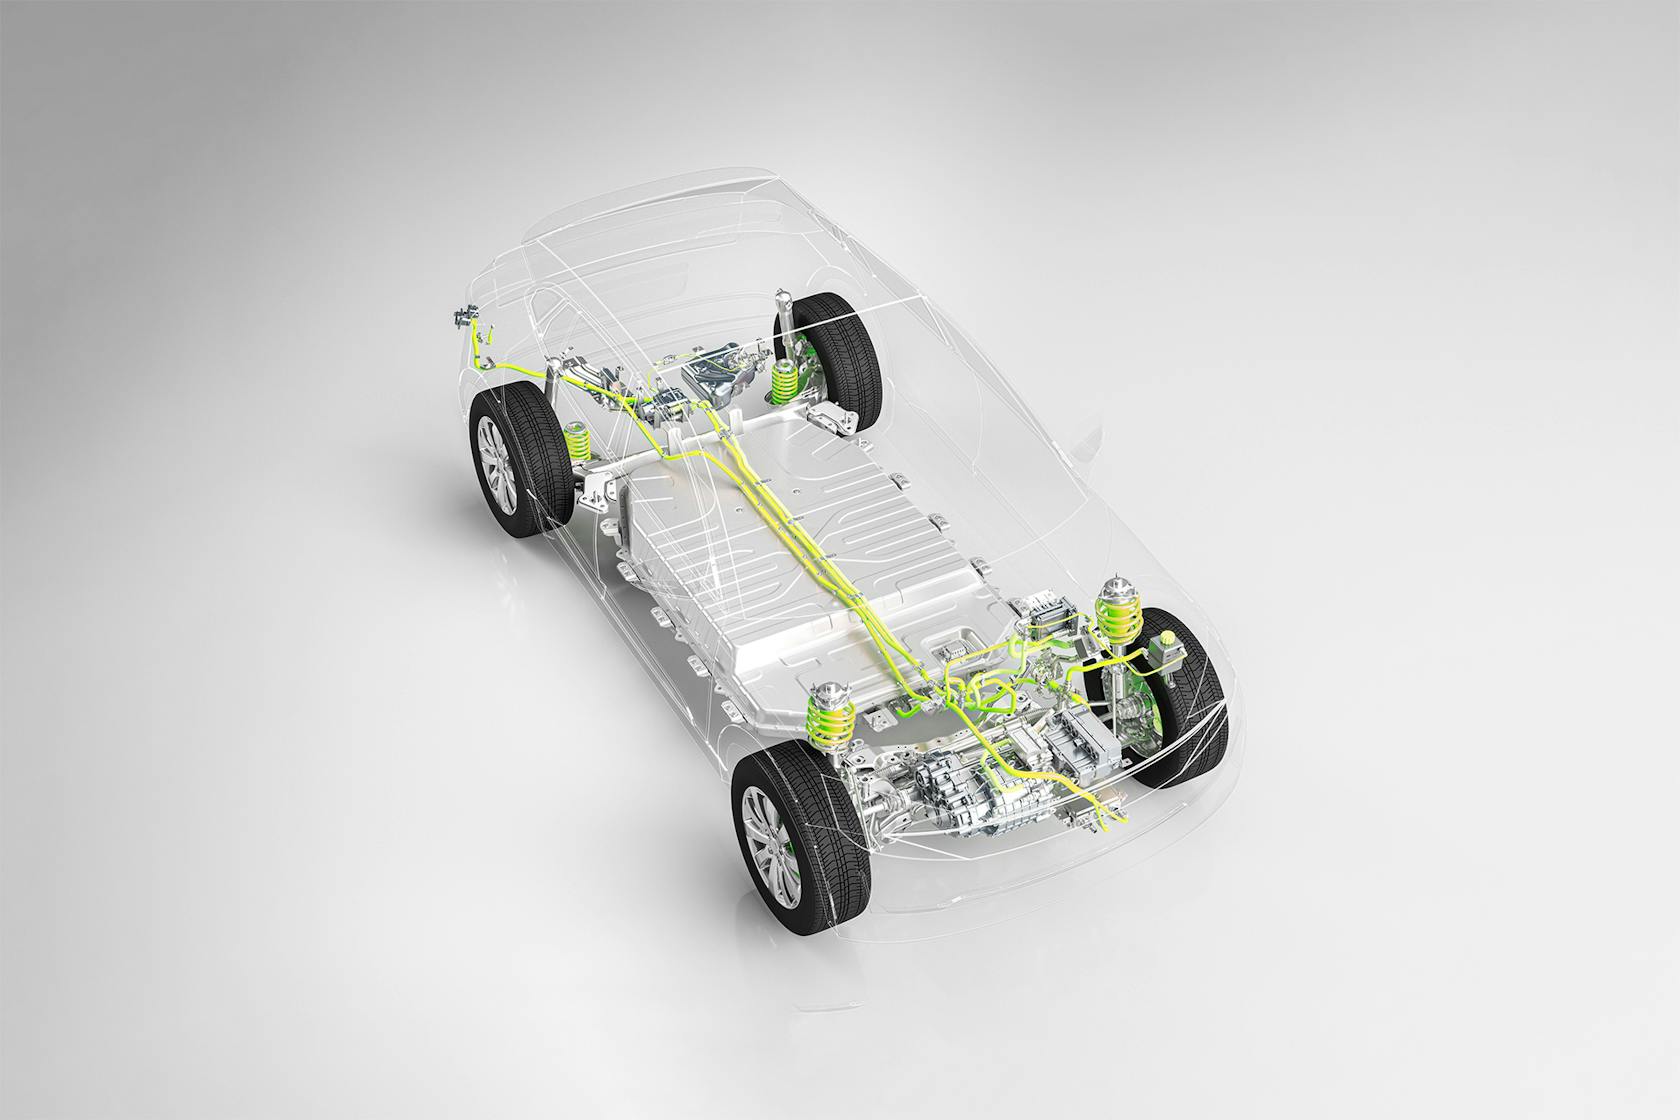 Une voiture à carrosserie transparente laisse voir la propulsion électrique et la technologie de batterie